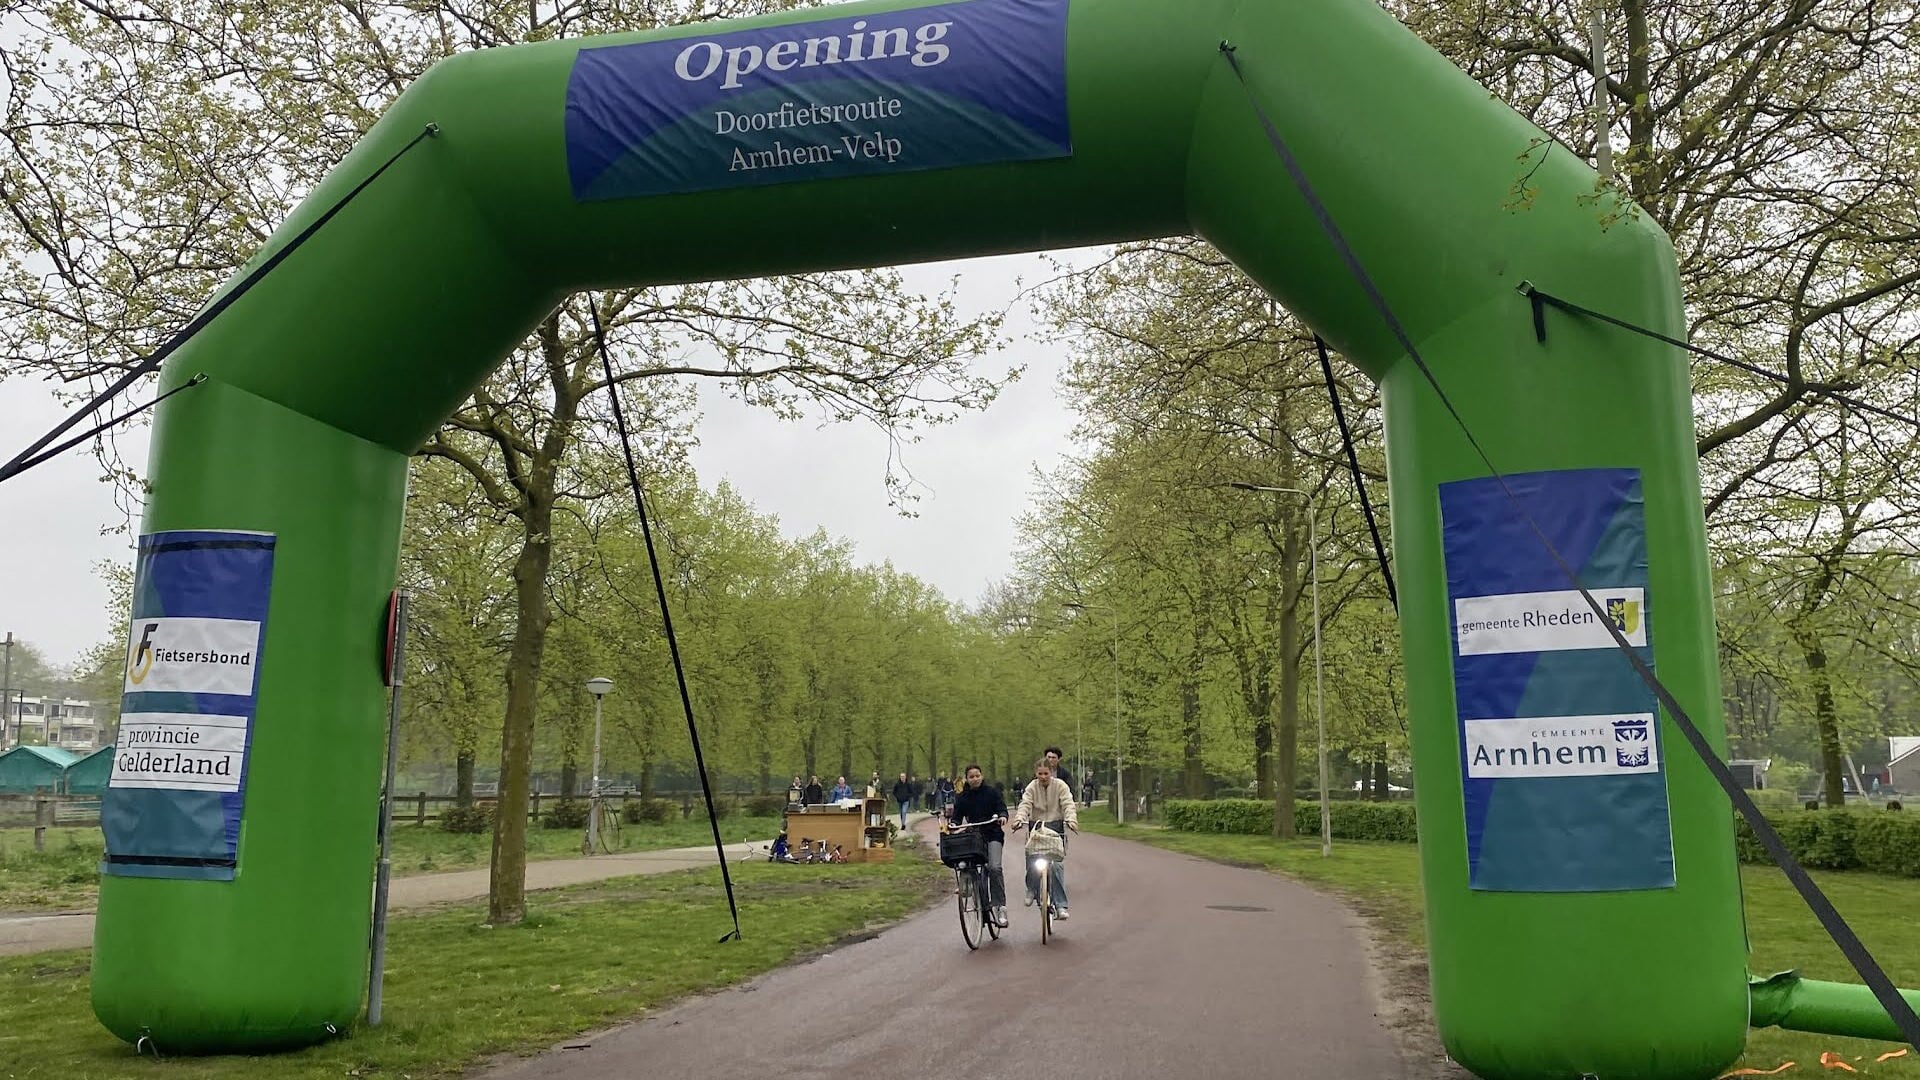 De doorfietsroute Arnhem-Velp is op 11 april officieel geopend.